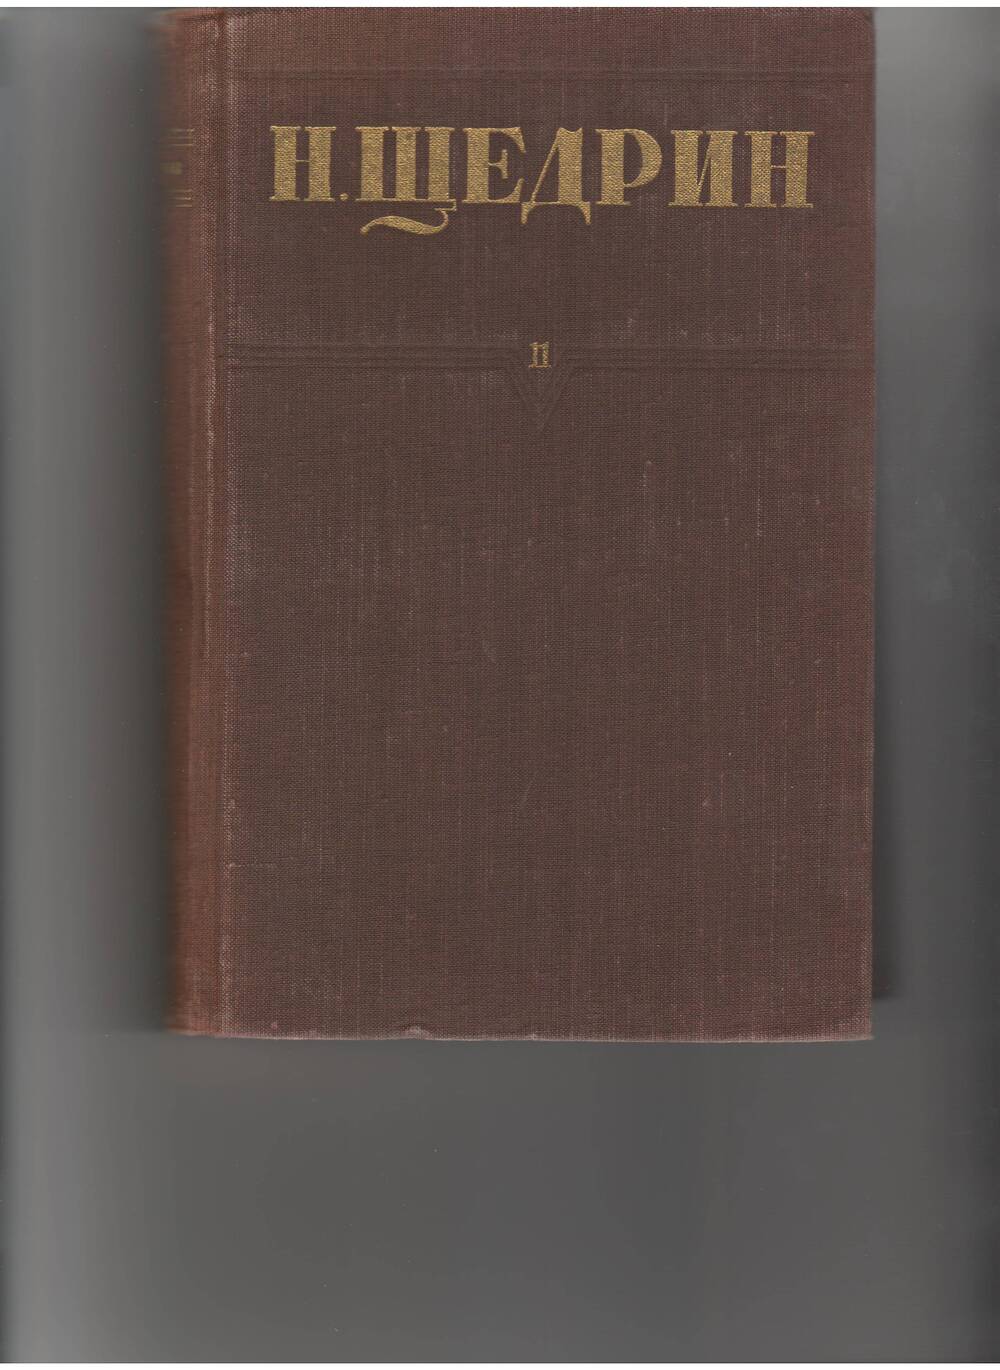 книга Щедрин Н. - Собр. соч. т.11. - М: Правда,1951.